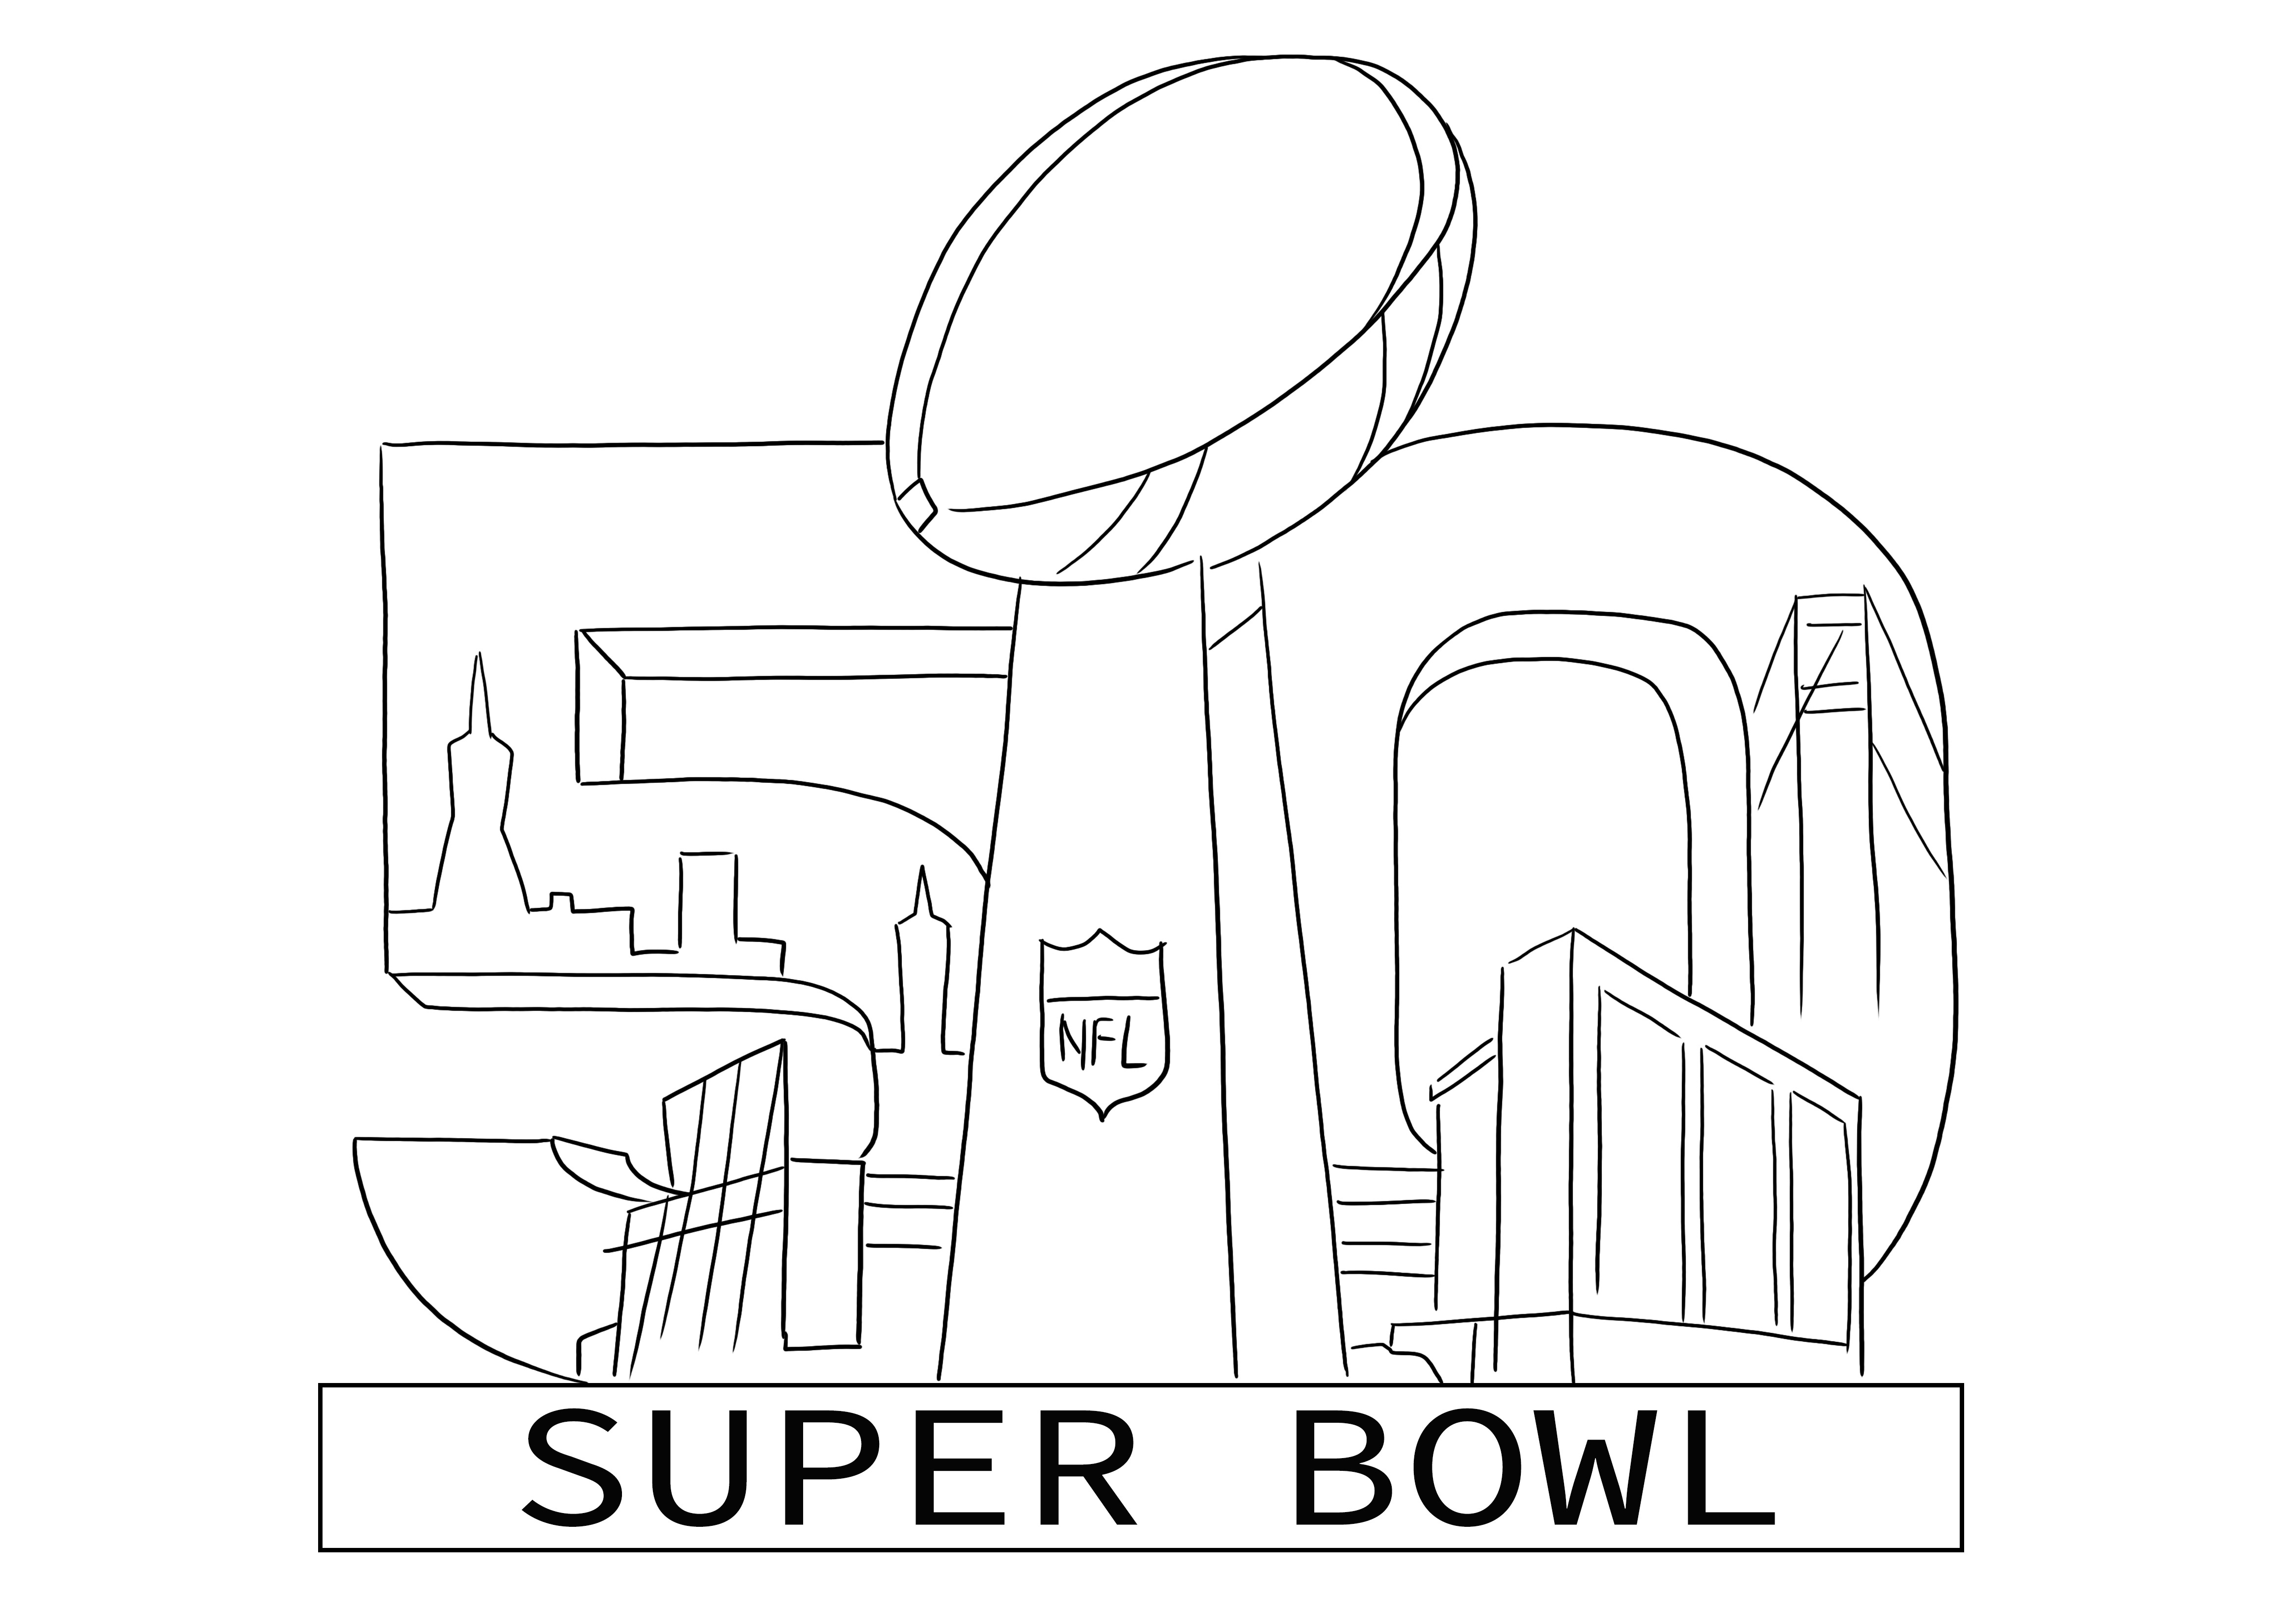 Super Bowl 2016 kleurlogo gratis te printen of te downloaden voor kinderen kleurplaat